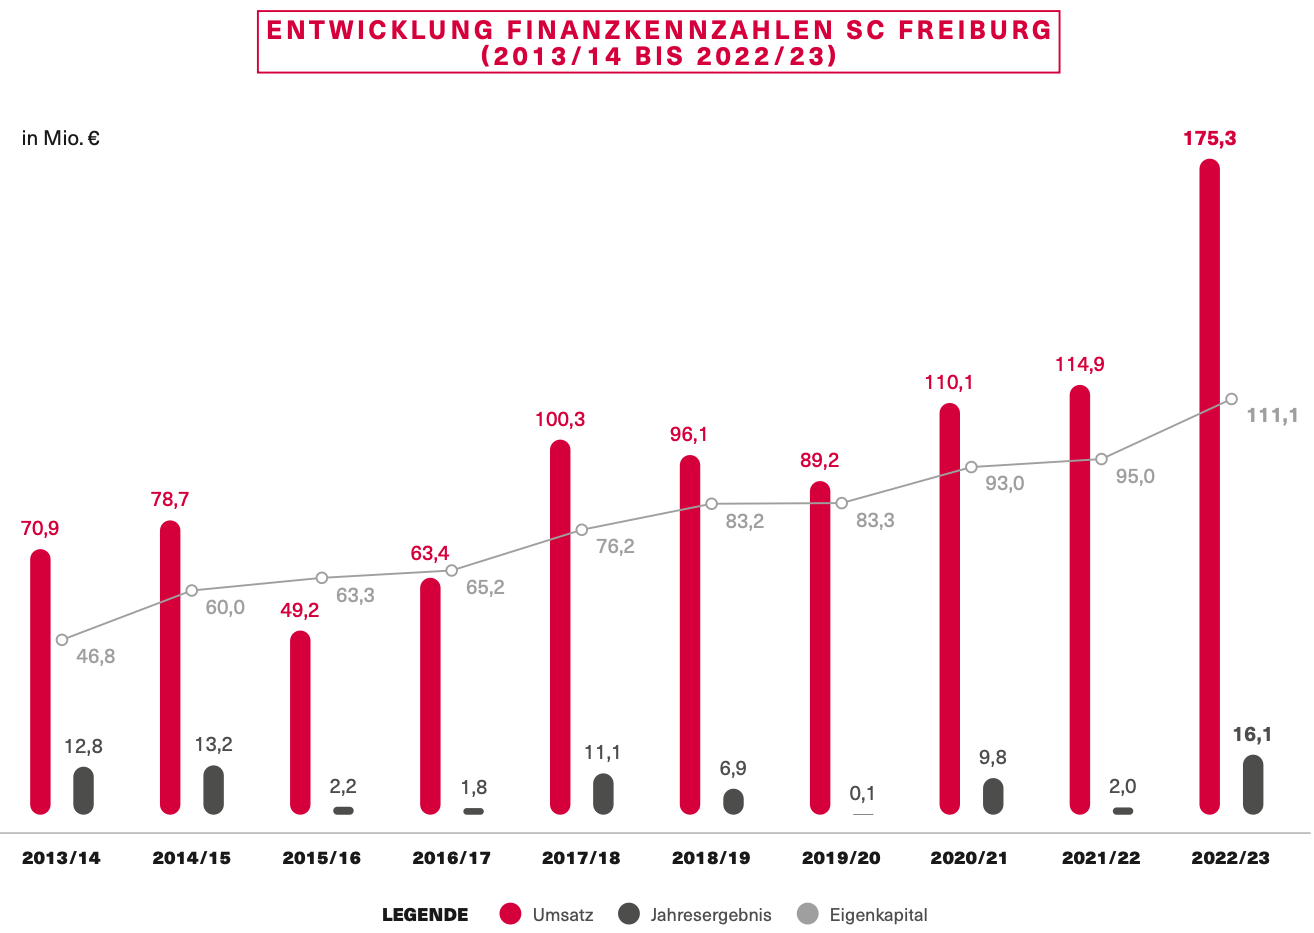 Der SC Freiburg steht heute wirtschaftlich so gut da wie noch nie. (Quelle: SPOBIS)